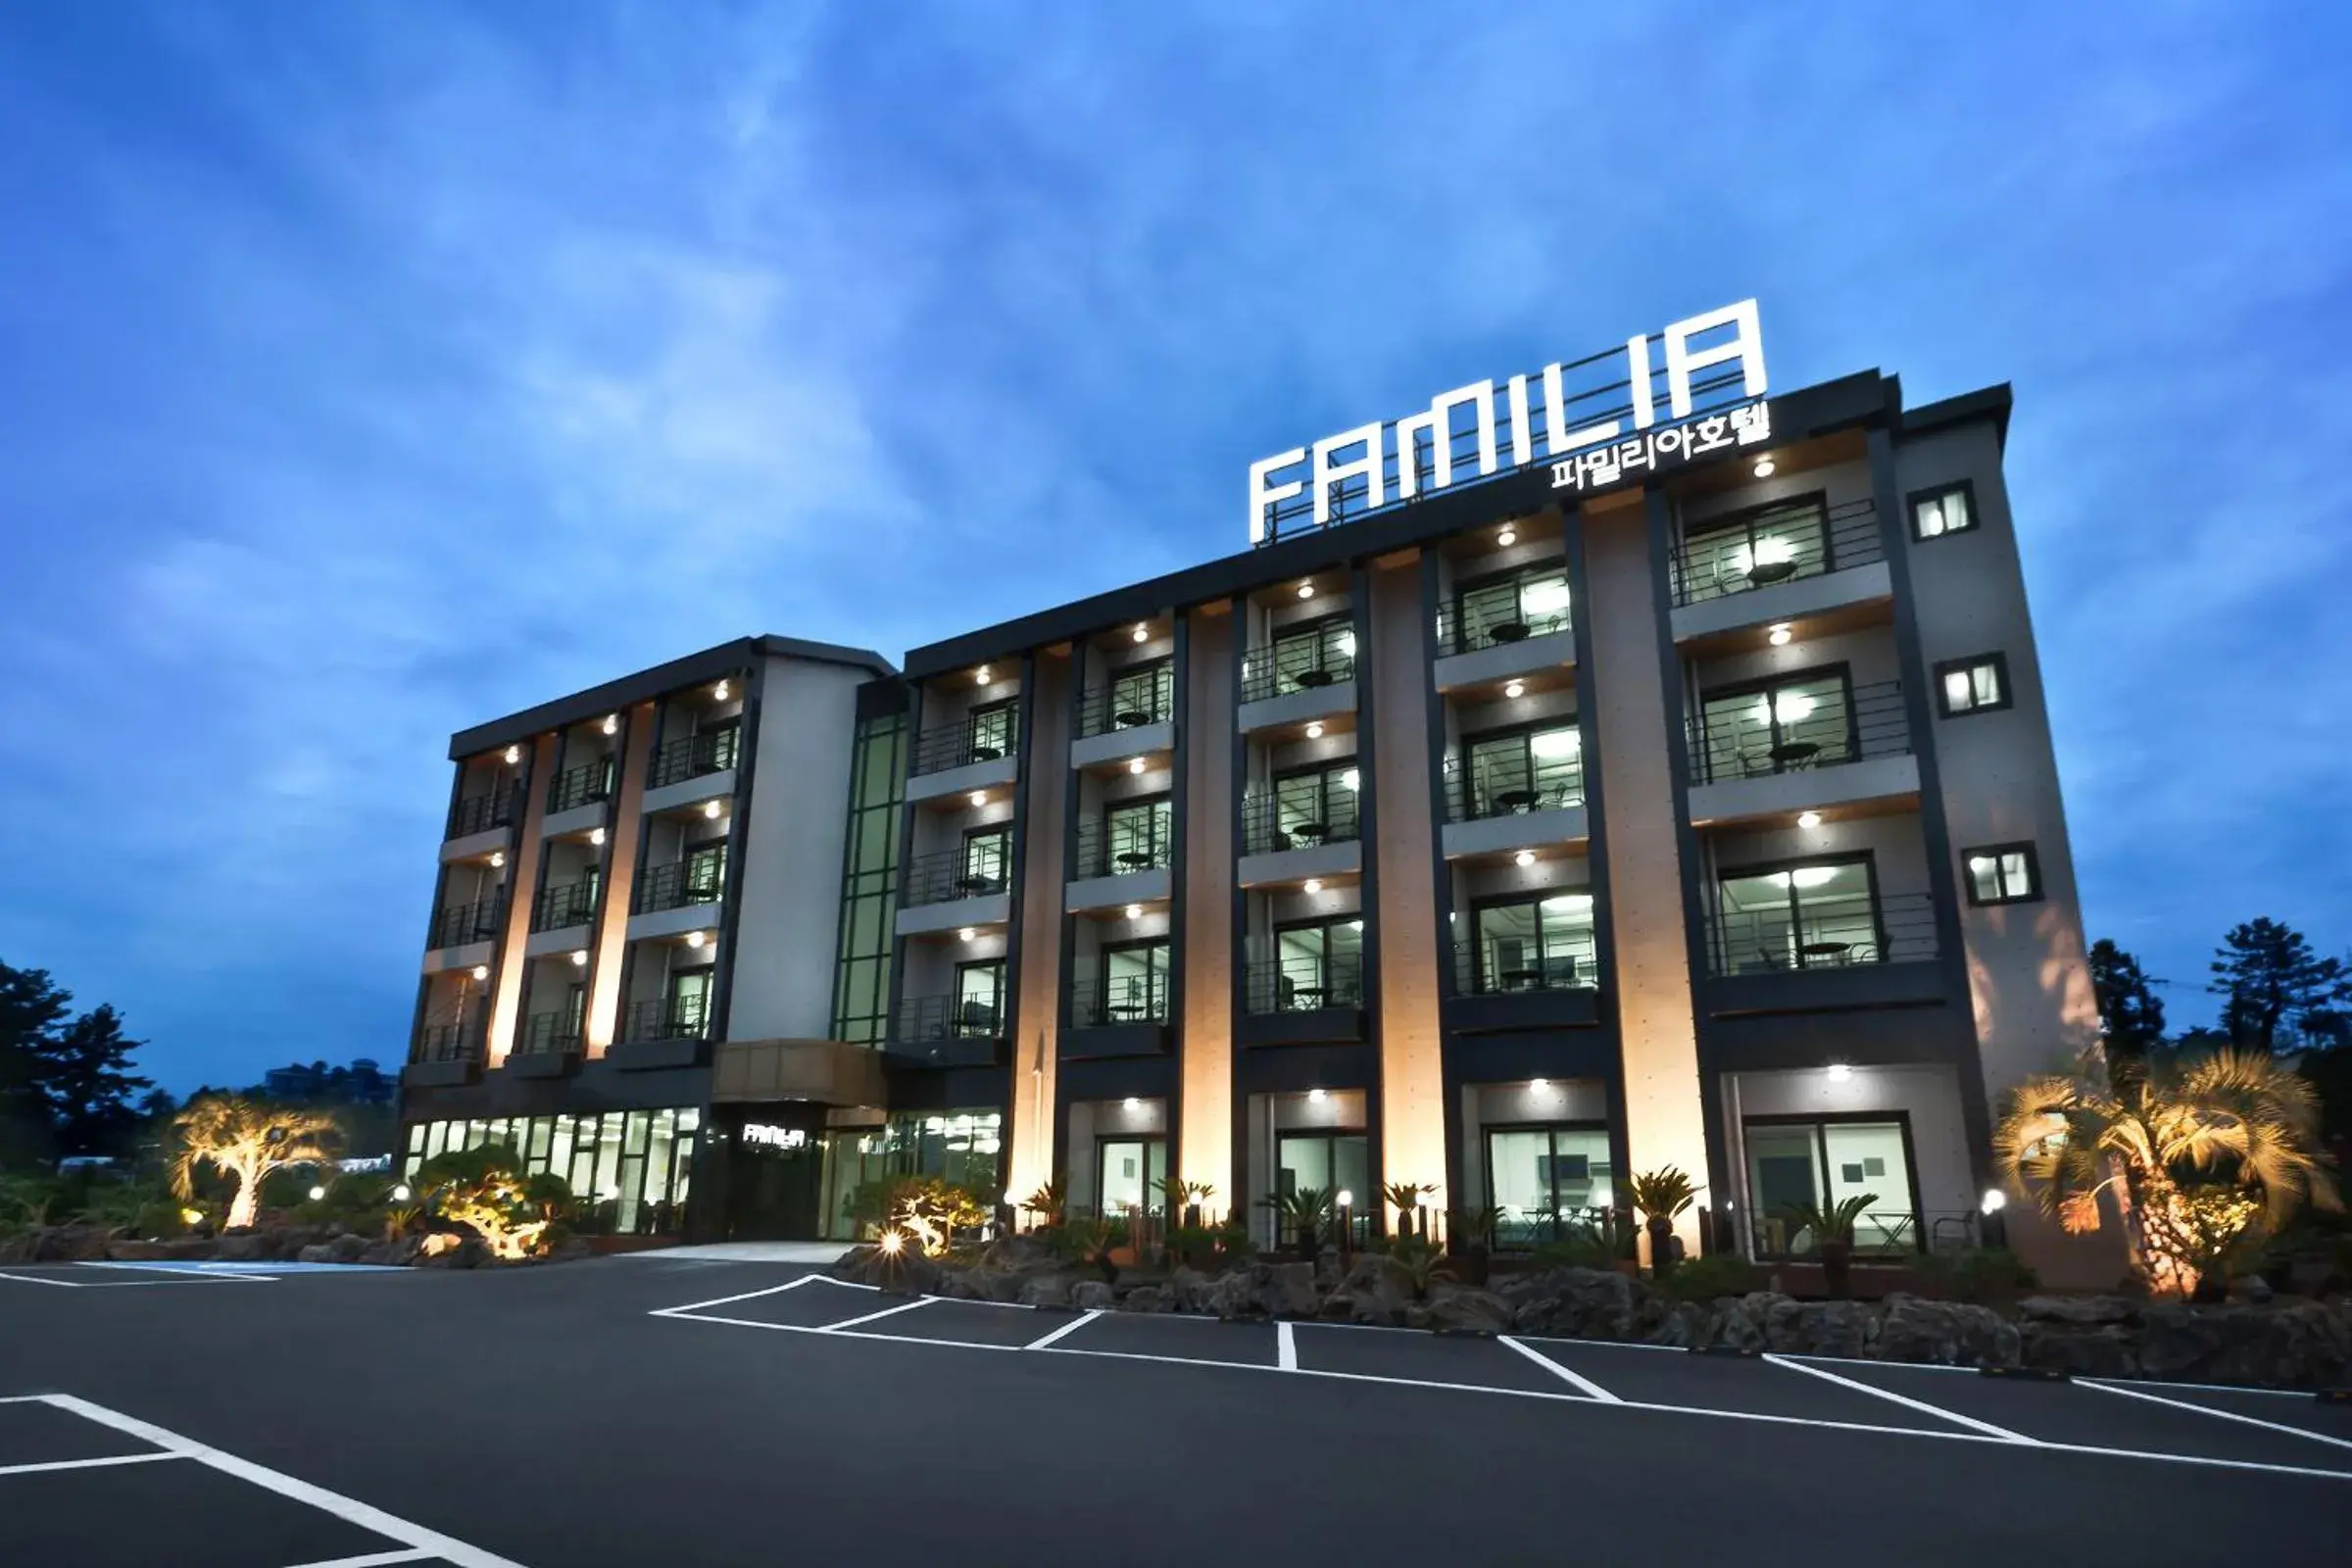 Facade/entrance, Property Building in Familia Hotel Jeju